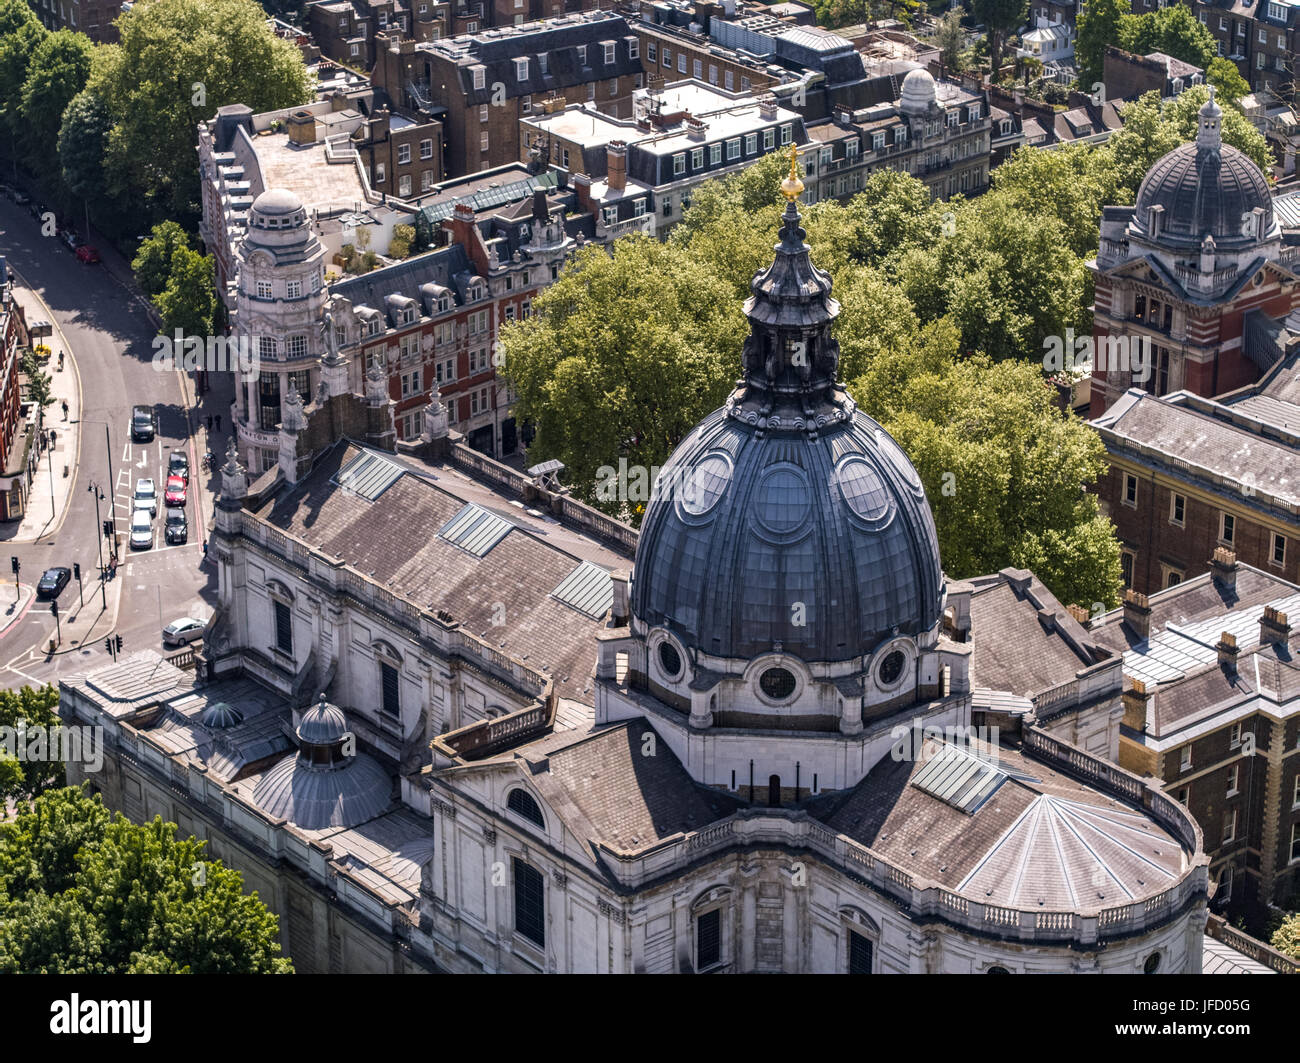 Une vue aérienne au-dessus de Kensington à Londres Angleterre Royaume-uni avec l'Oratoire de Londres au premier plan, près du Victoria & Albert museum Banque D'Images